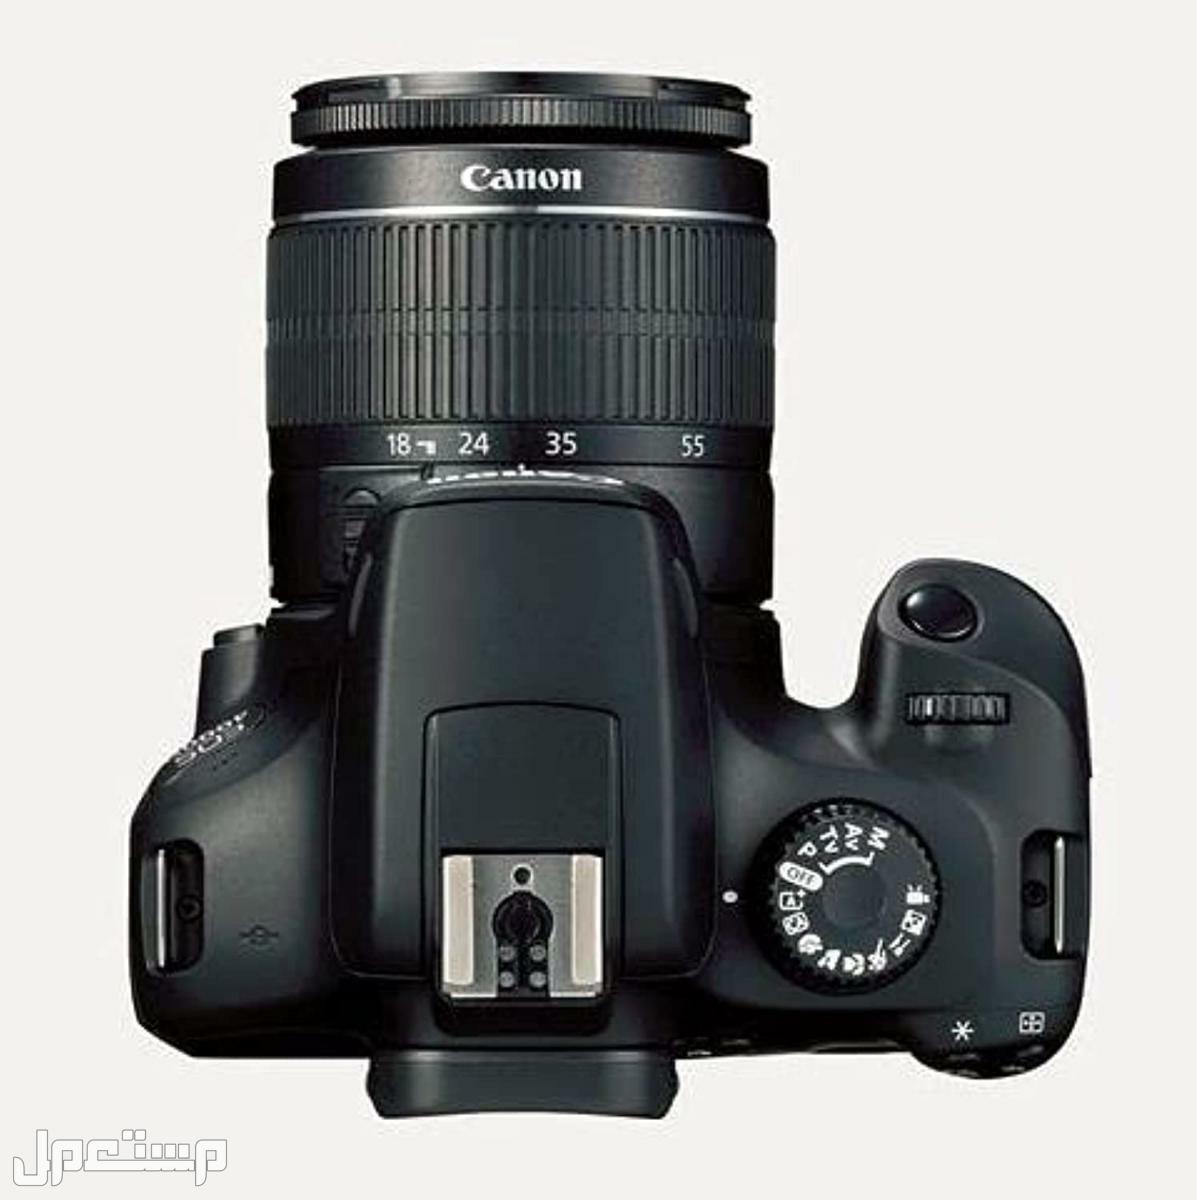 مواصفات وأهم مميزات وأسعار أرخص كاميرا تصوير من كانون في لبنان كاميرا كانون  D 4000 بعدسة احادية